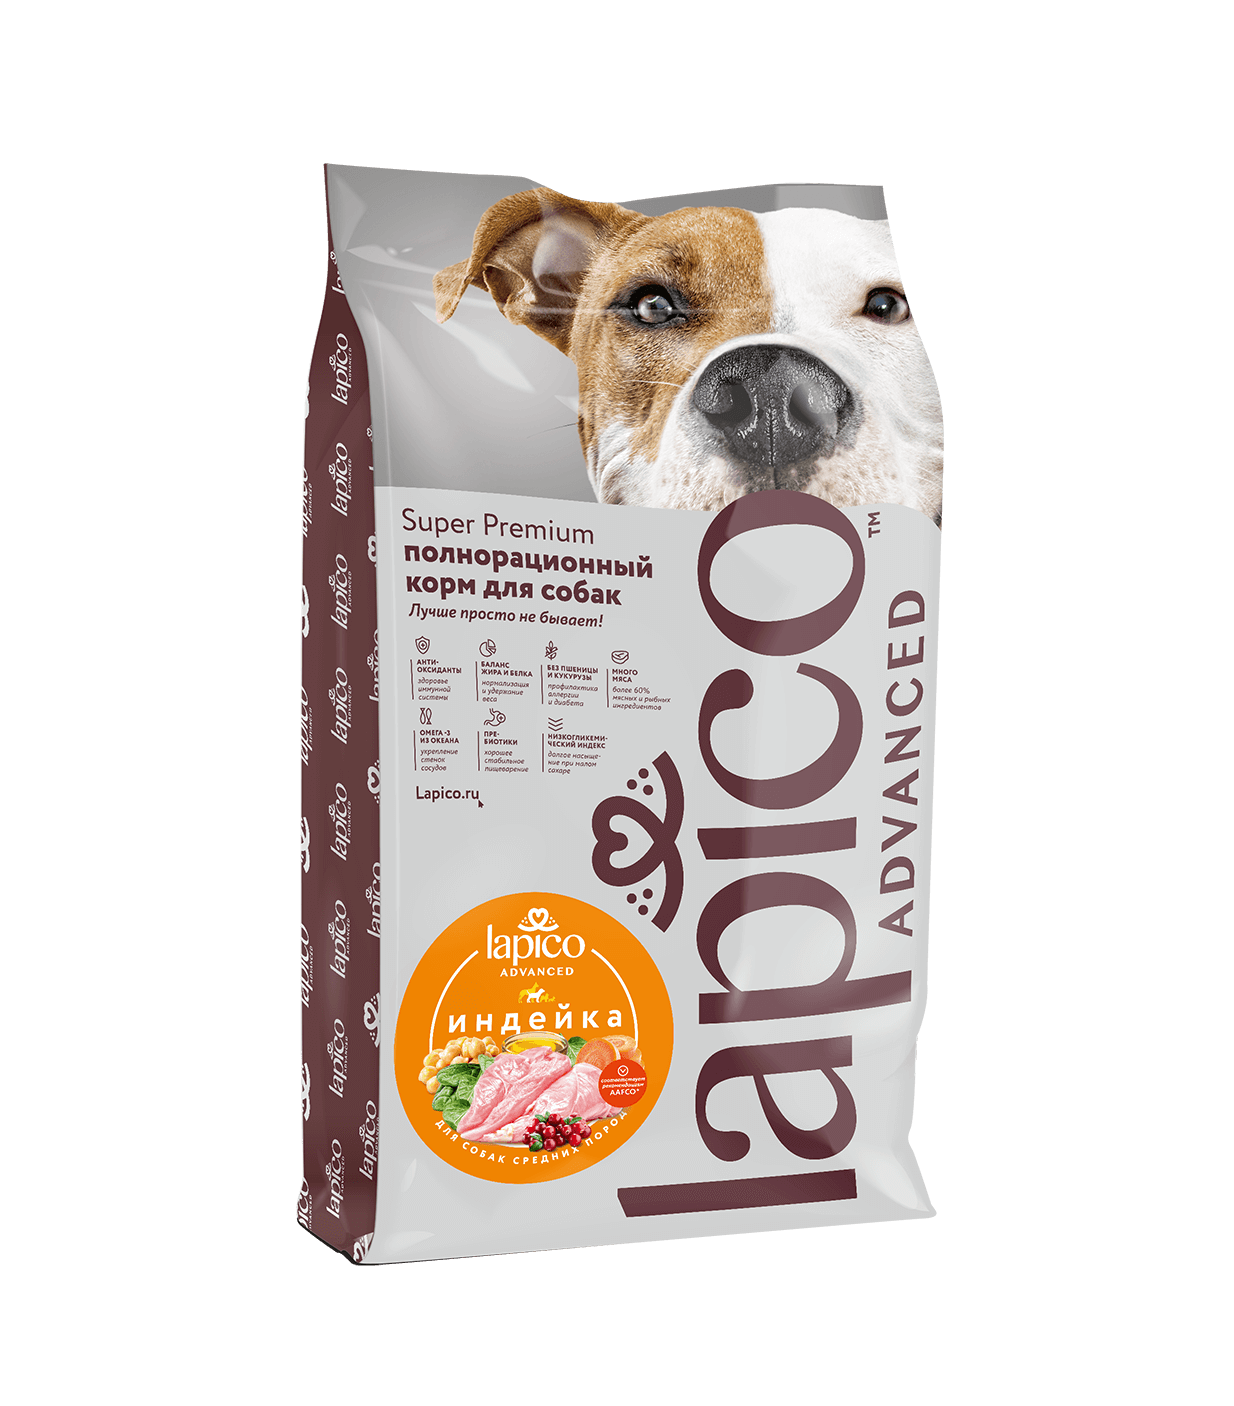 Сухой корм «Lapico Advanced» для собак средних пород, индейка